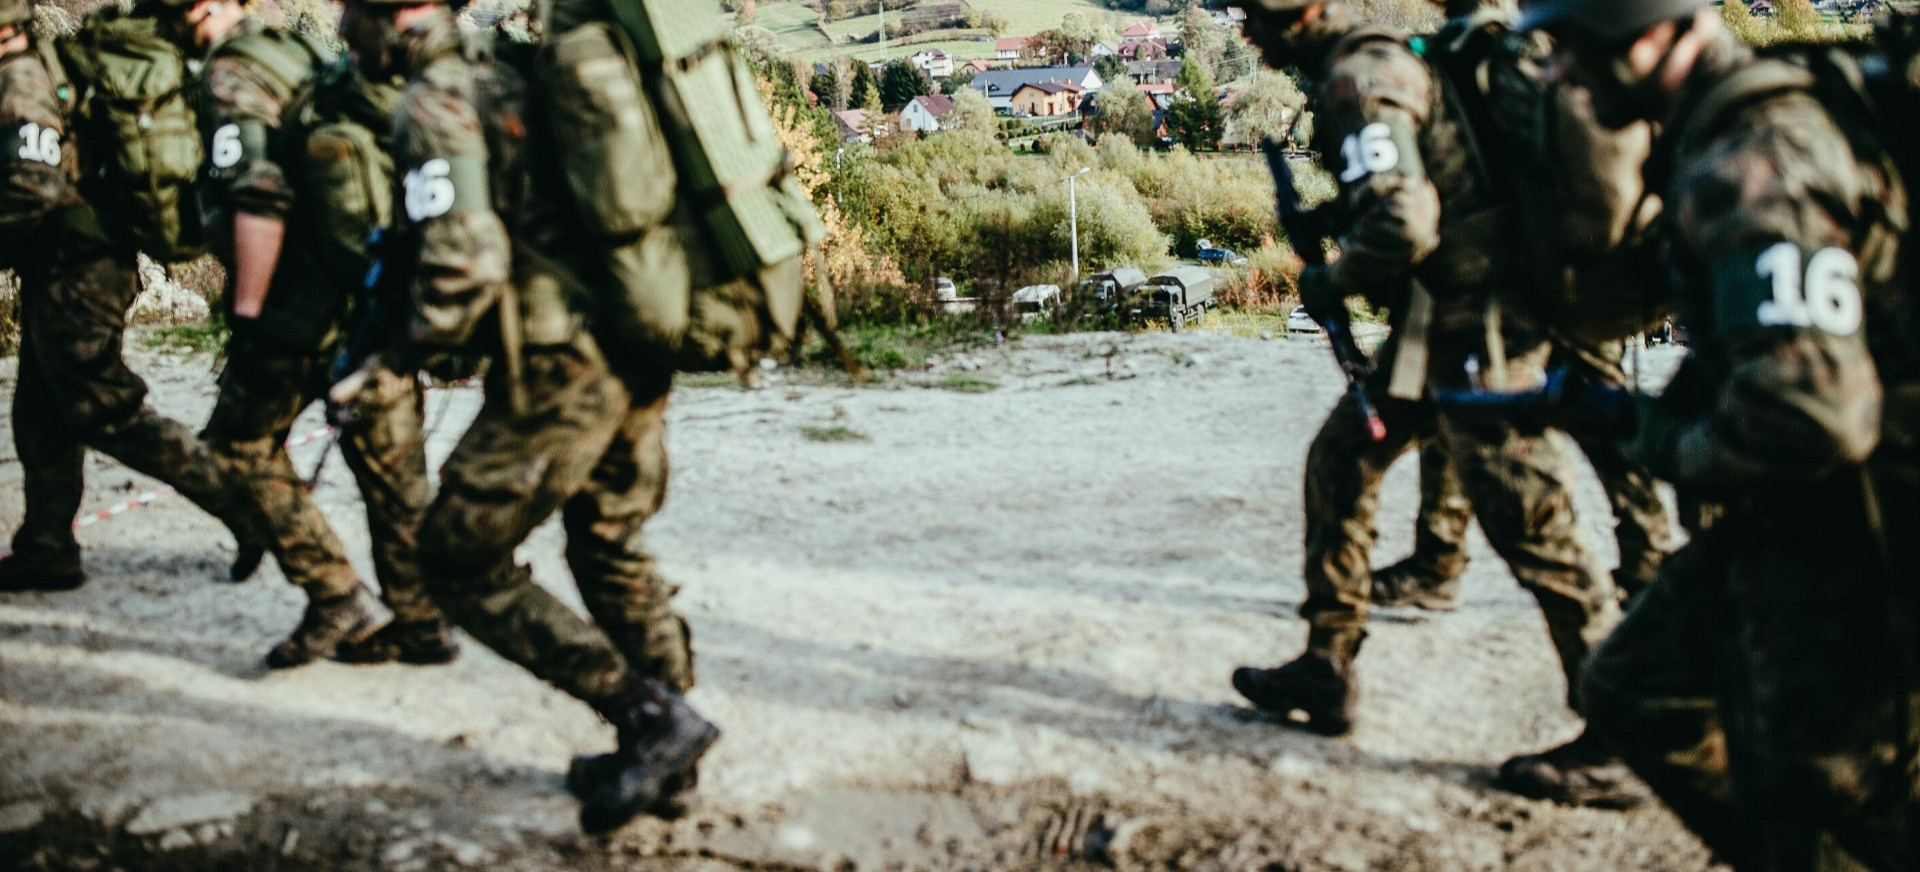 Szkolenie wojskowe w Bieszczadach! Obszar działań (MAPA)